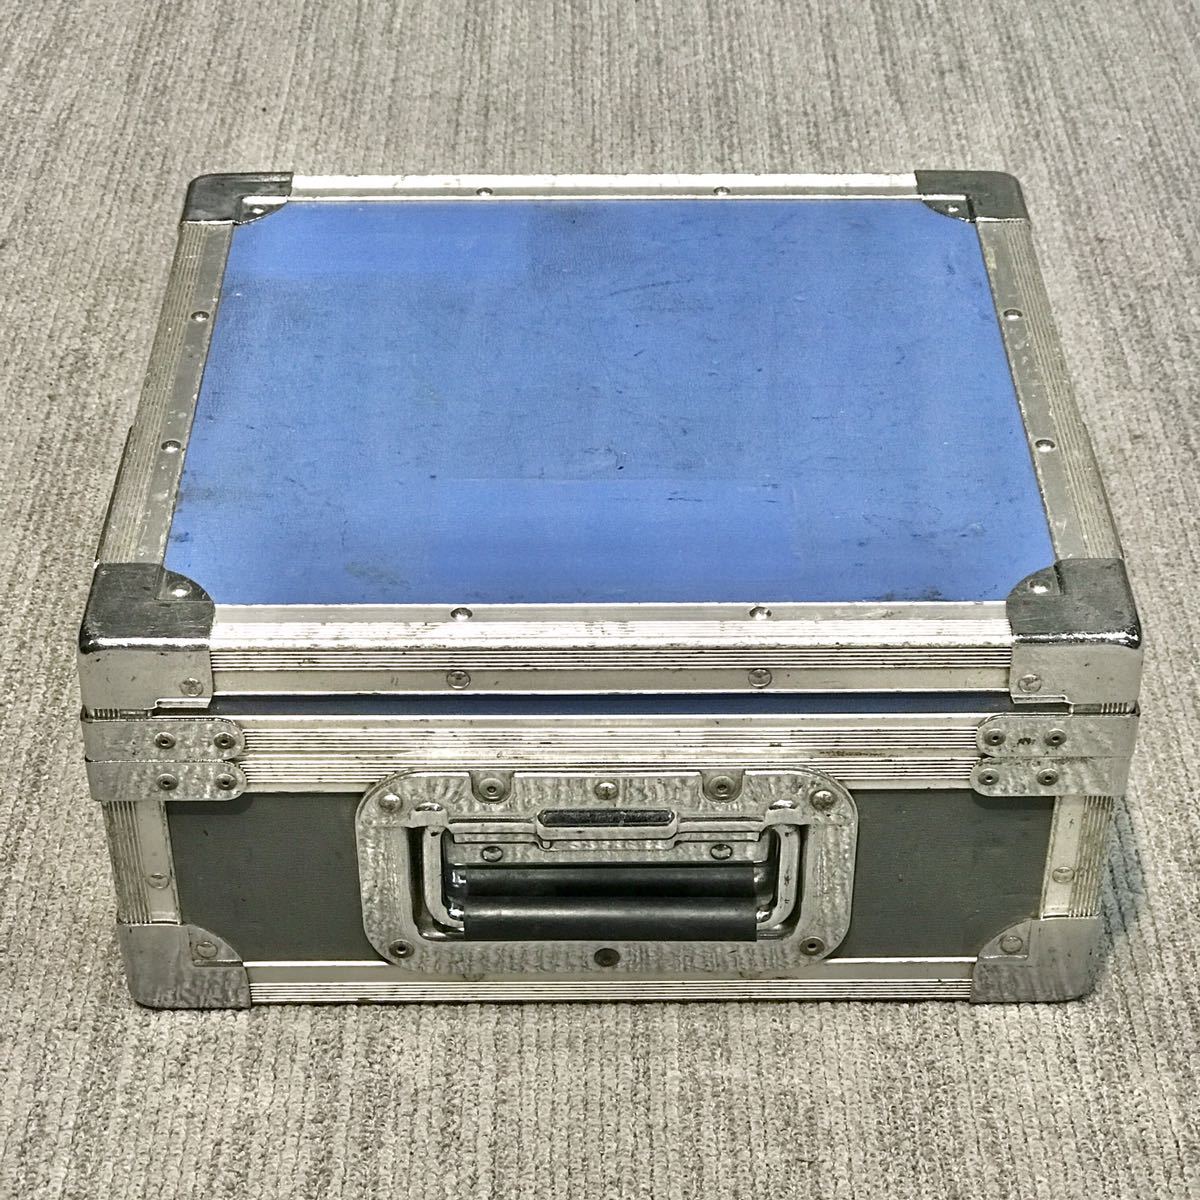 ハードケース ケース ジュラルミン トランク アルミケース 機材 輸送 精密 映像 機器 音声 楽器 カメラ レンズ ツール ボックス 中古 2_画像3